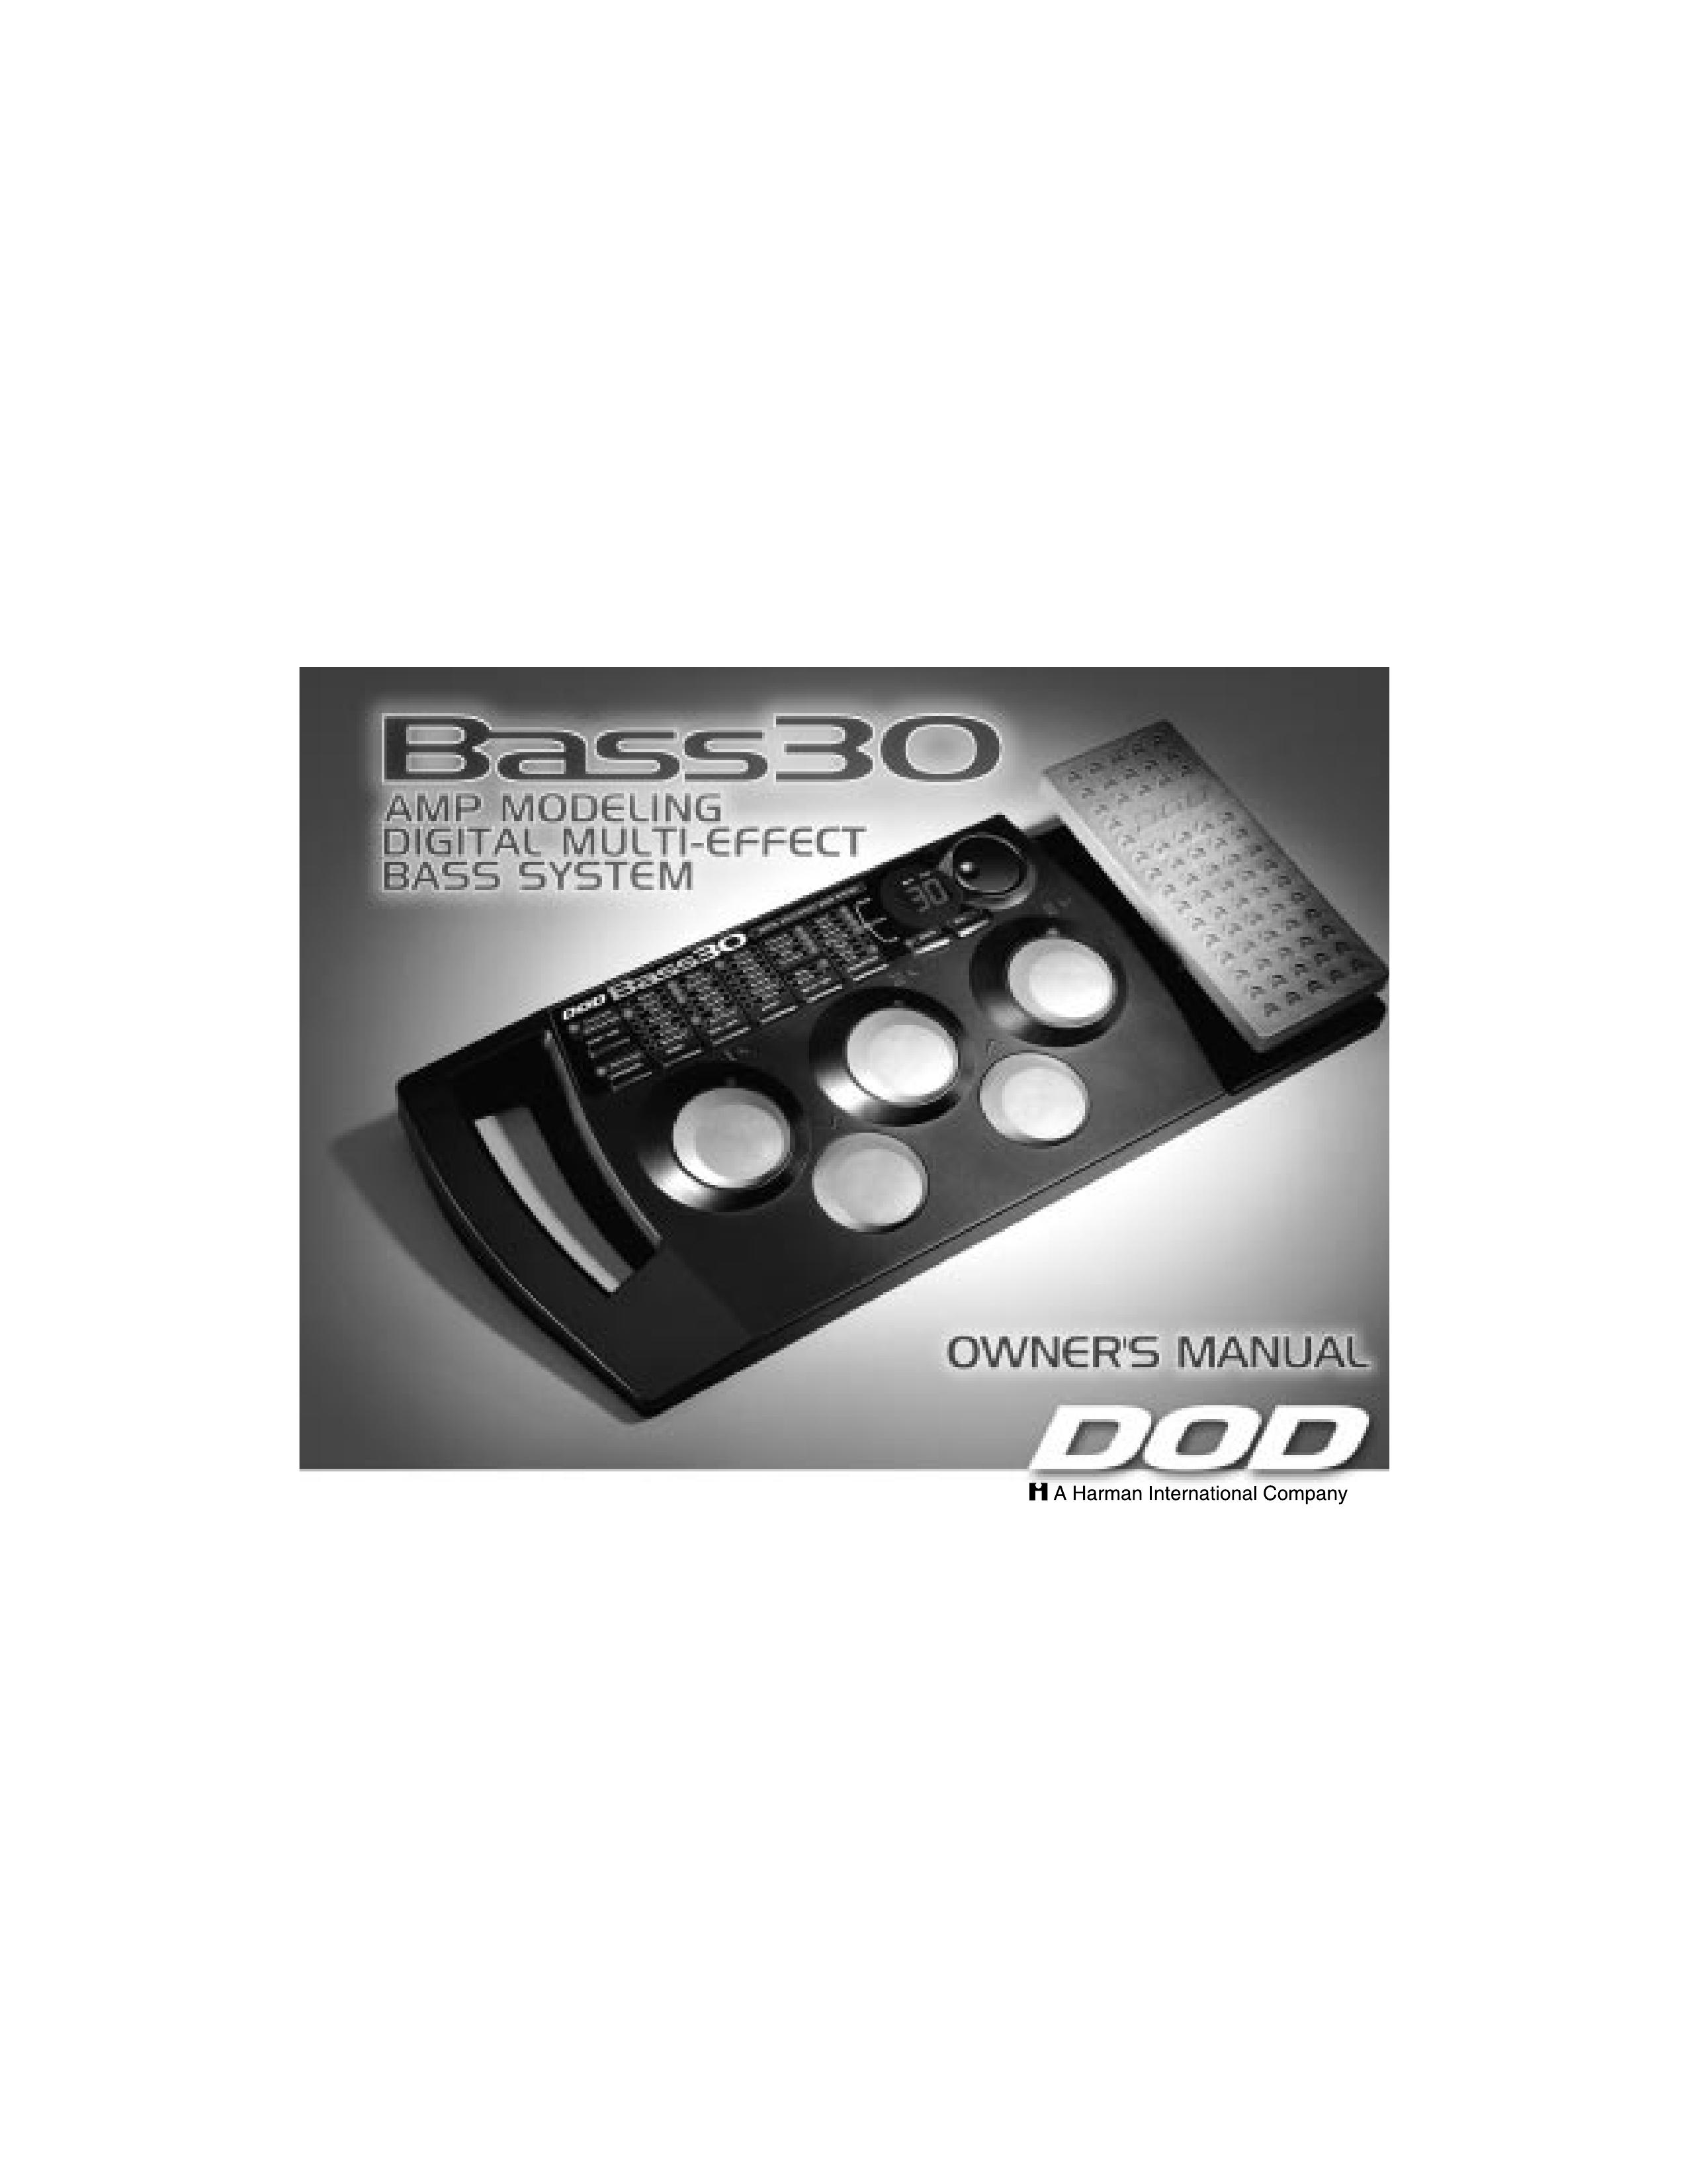 DOD Bass30 Musical Instrument User Manual